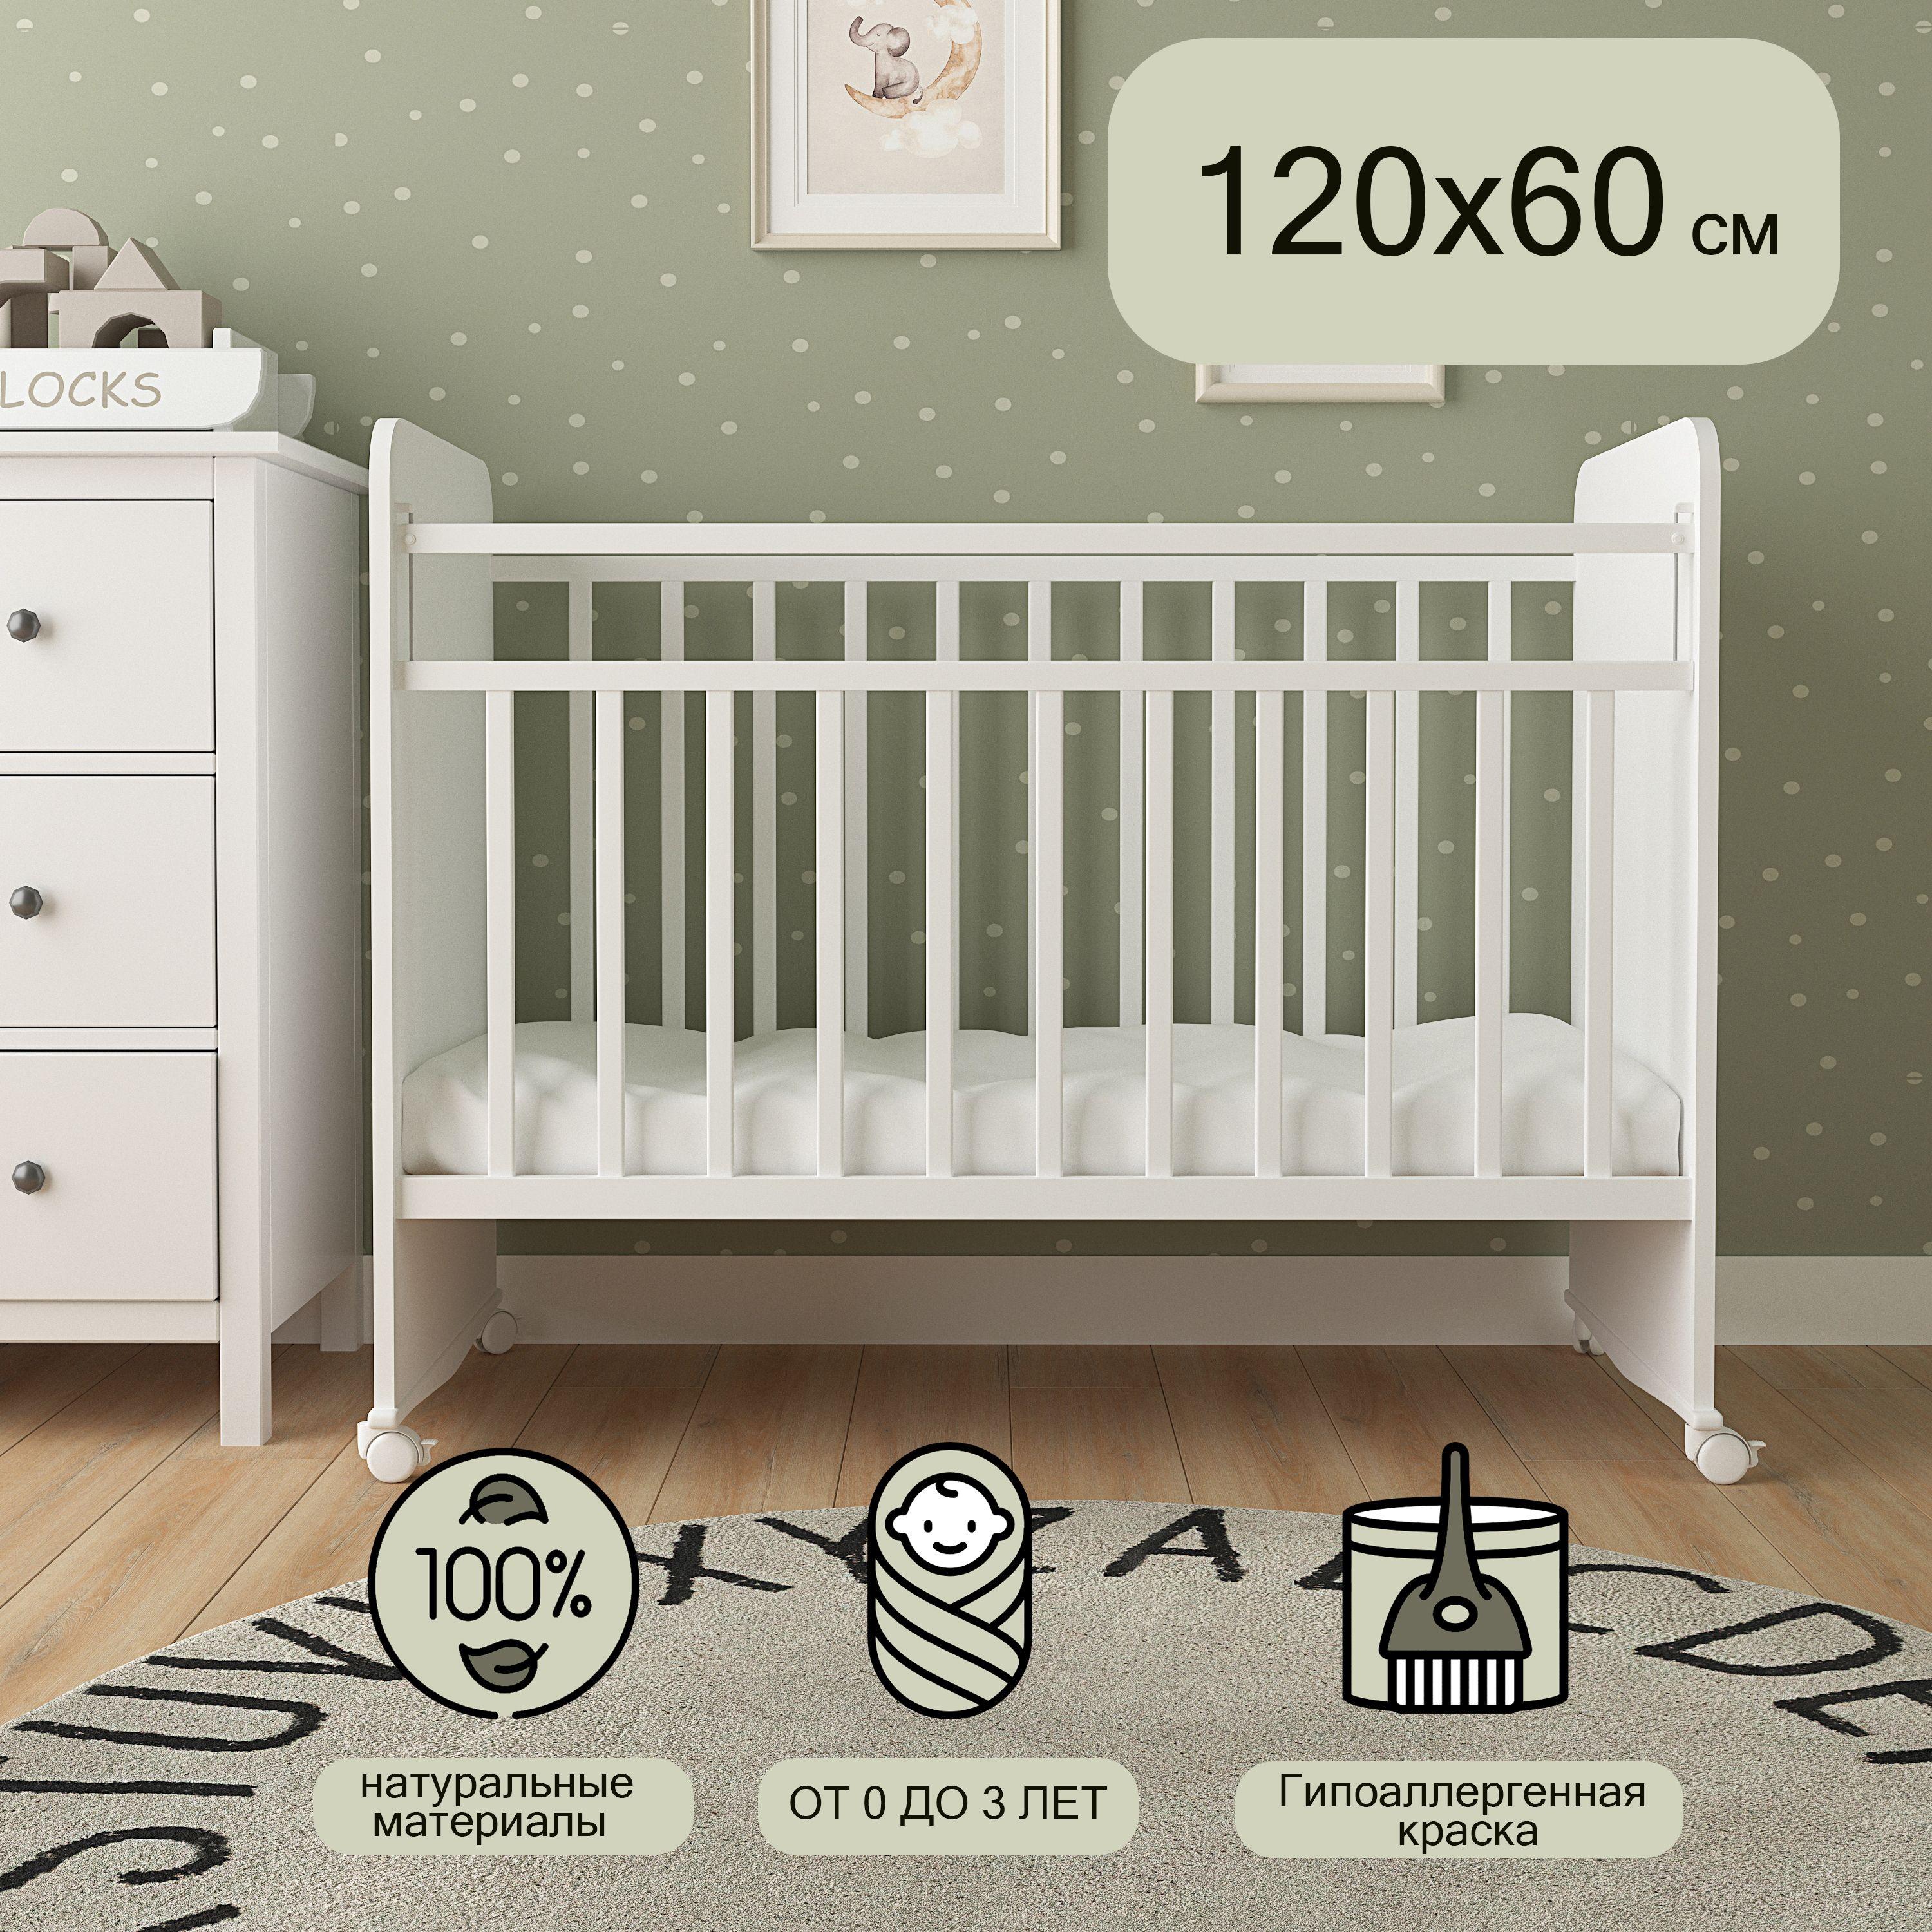 ОПТИПРОМ-А | Детская кроватка для новорожденного, Мультик, 120х60, Белый